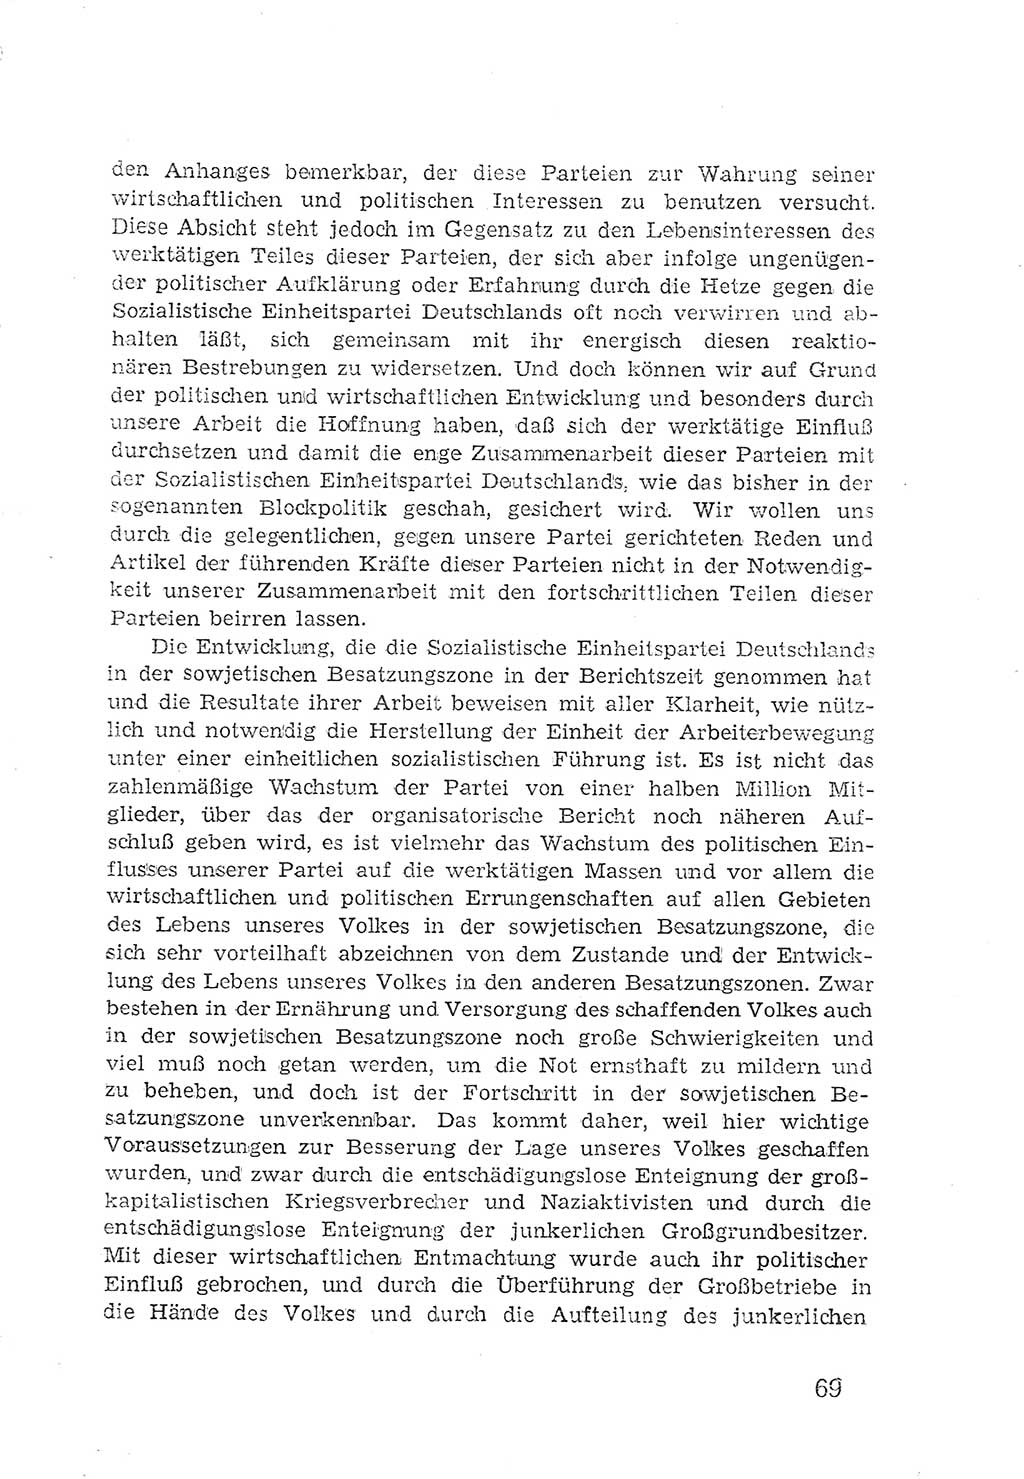 Protokoll der Verhandlungen des 2. Parteitages der Sozialistischen Einheitspartei Deutschlands (SED) [Sowjetische Besatzungszone (SBZ) Deutschlands] 1947, Seite 69 (Prot. Verh. 2. PT SED SBZ Dtl. 1947, S. 69)